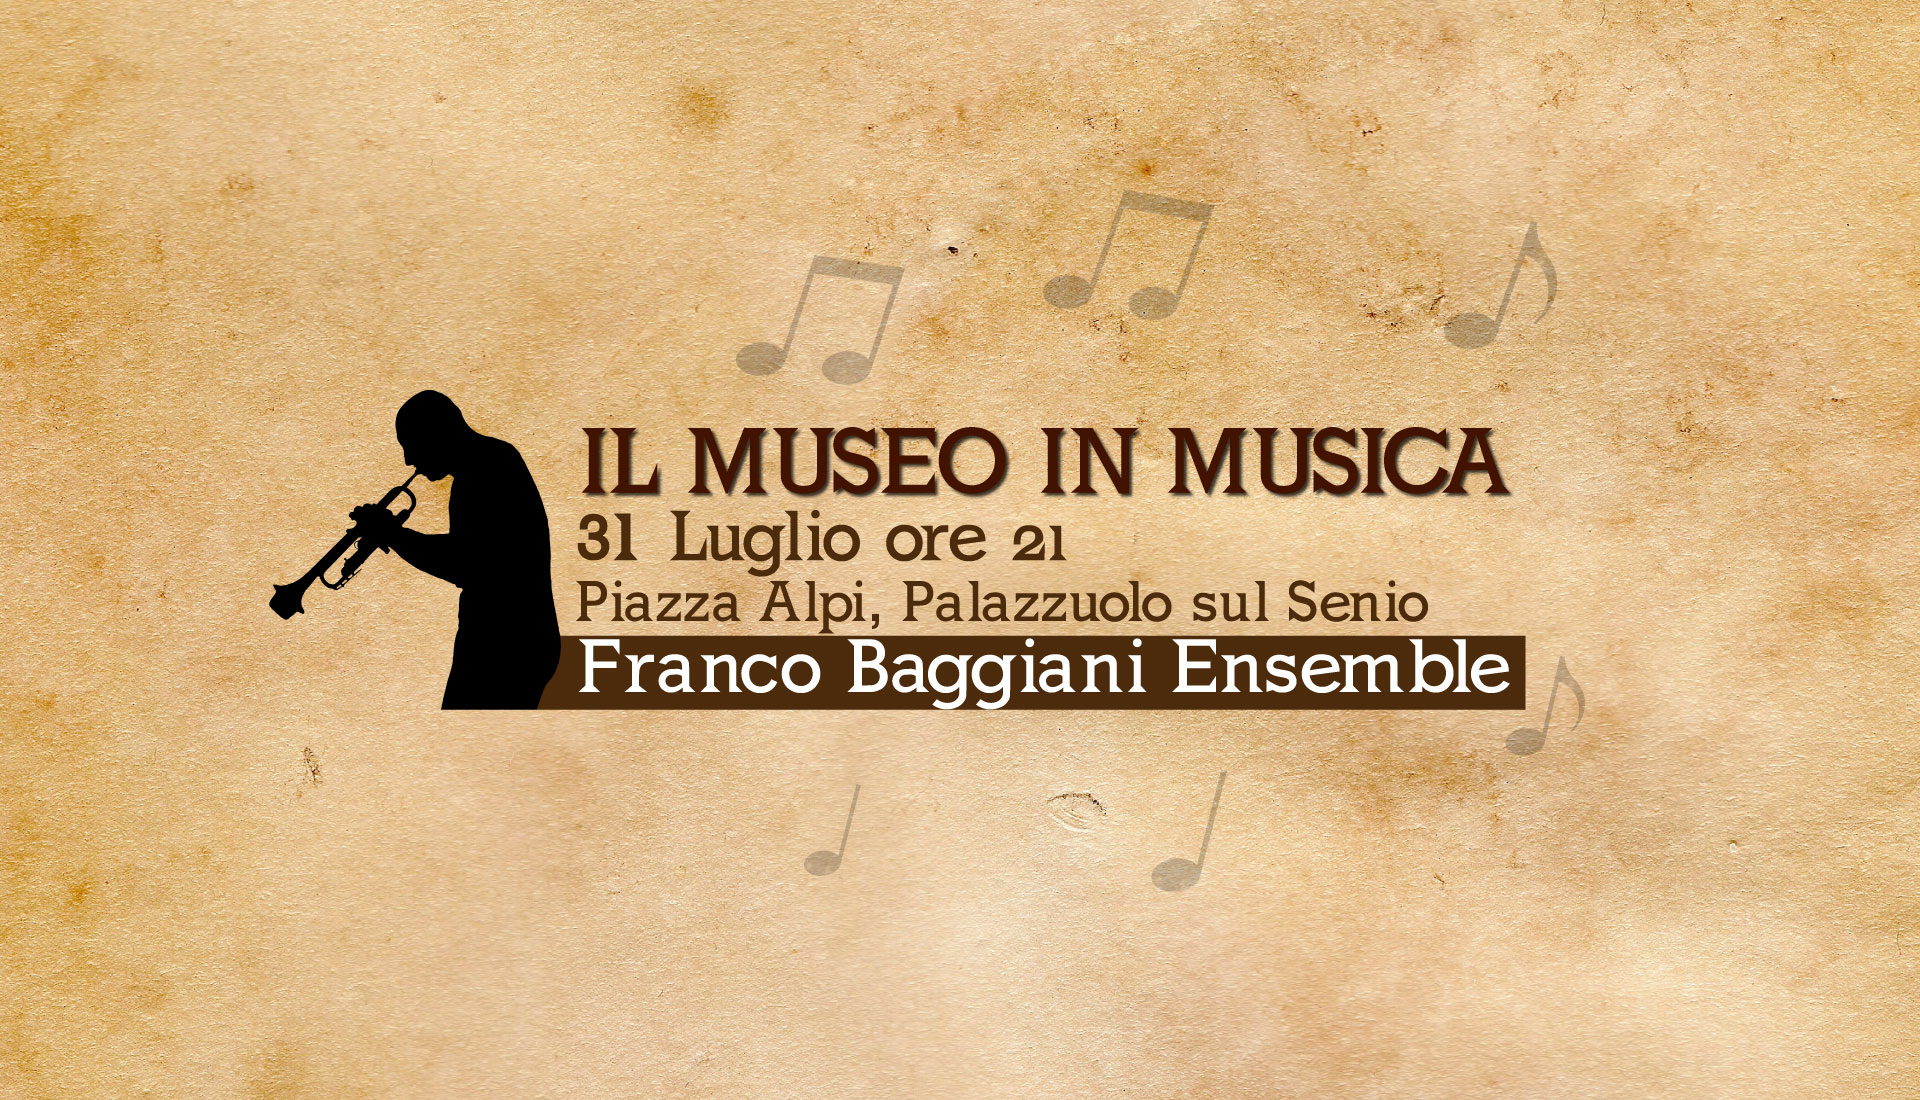 Il Museo in Musica 31 Luglio Palazzuolo ore 21 Franco Baggiani Ensemble